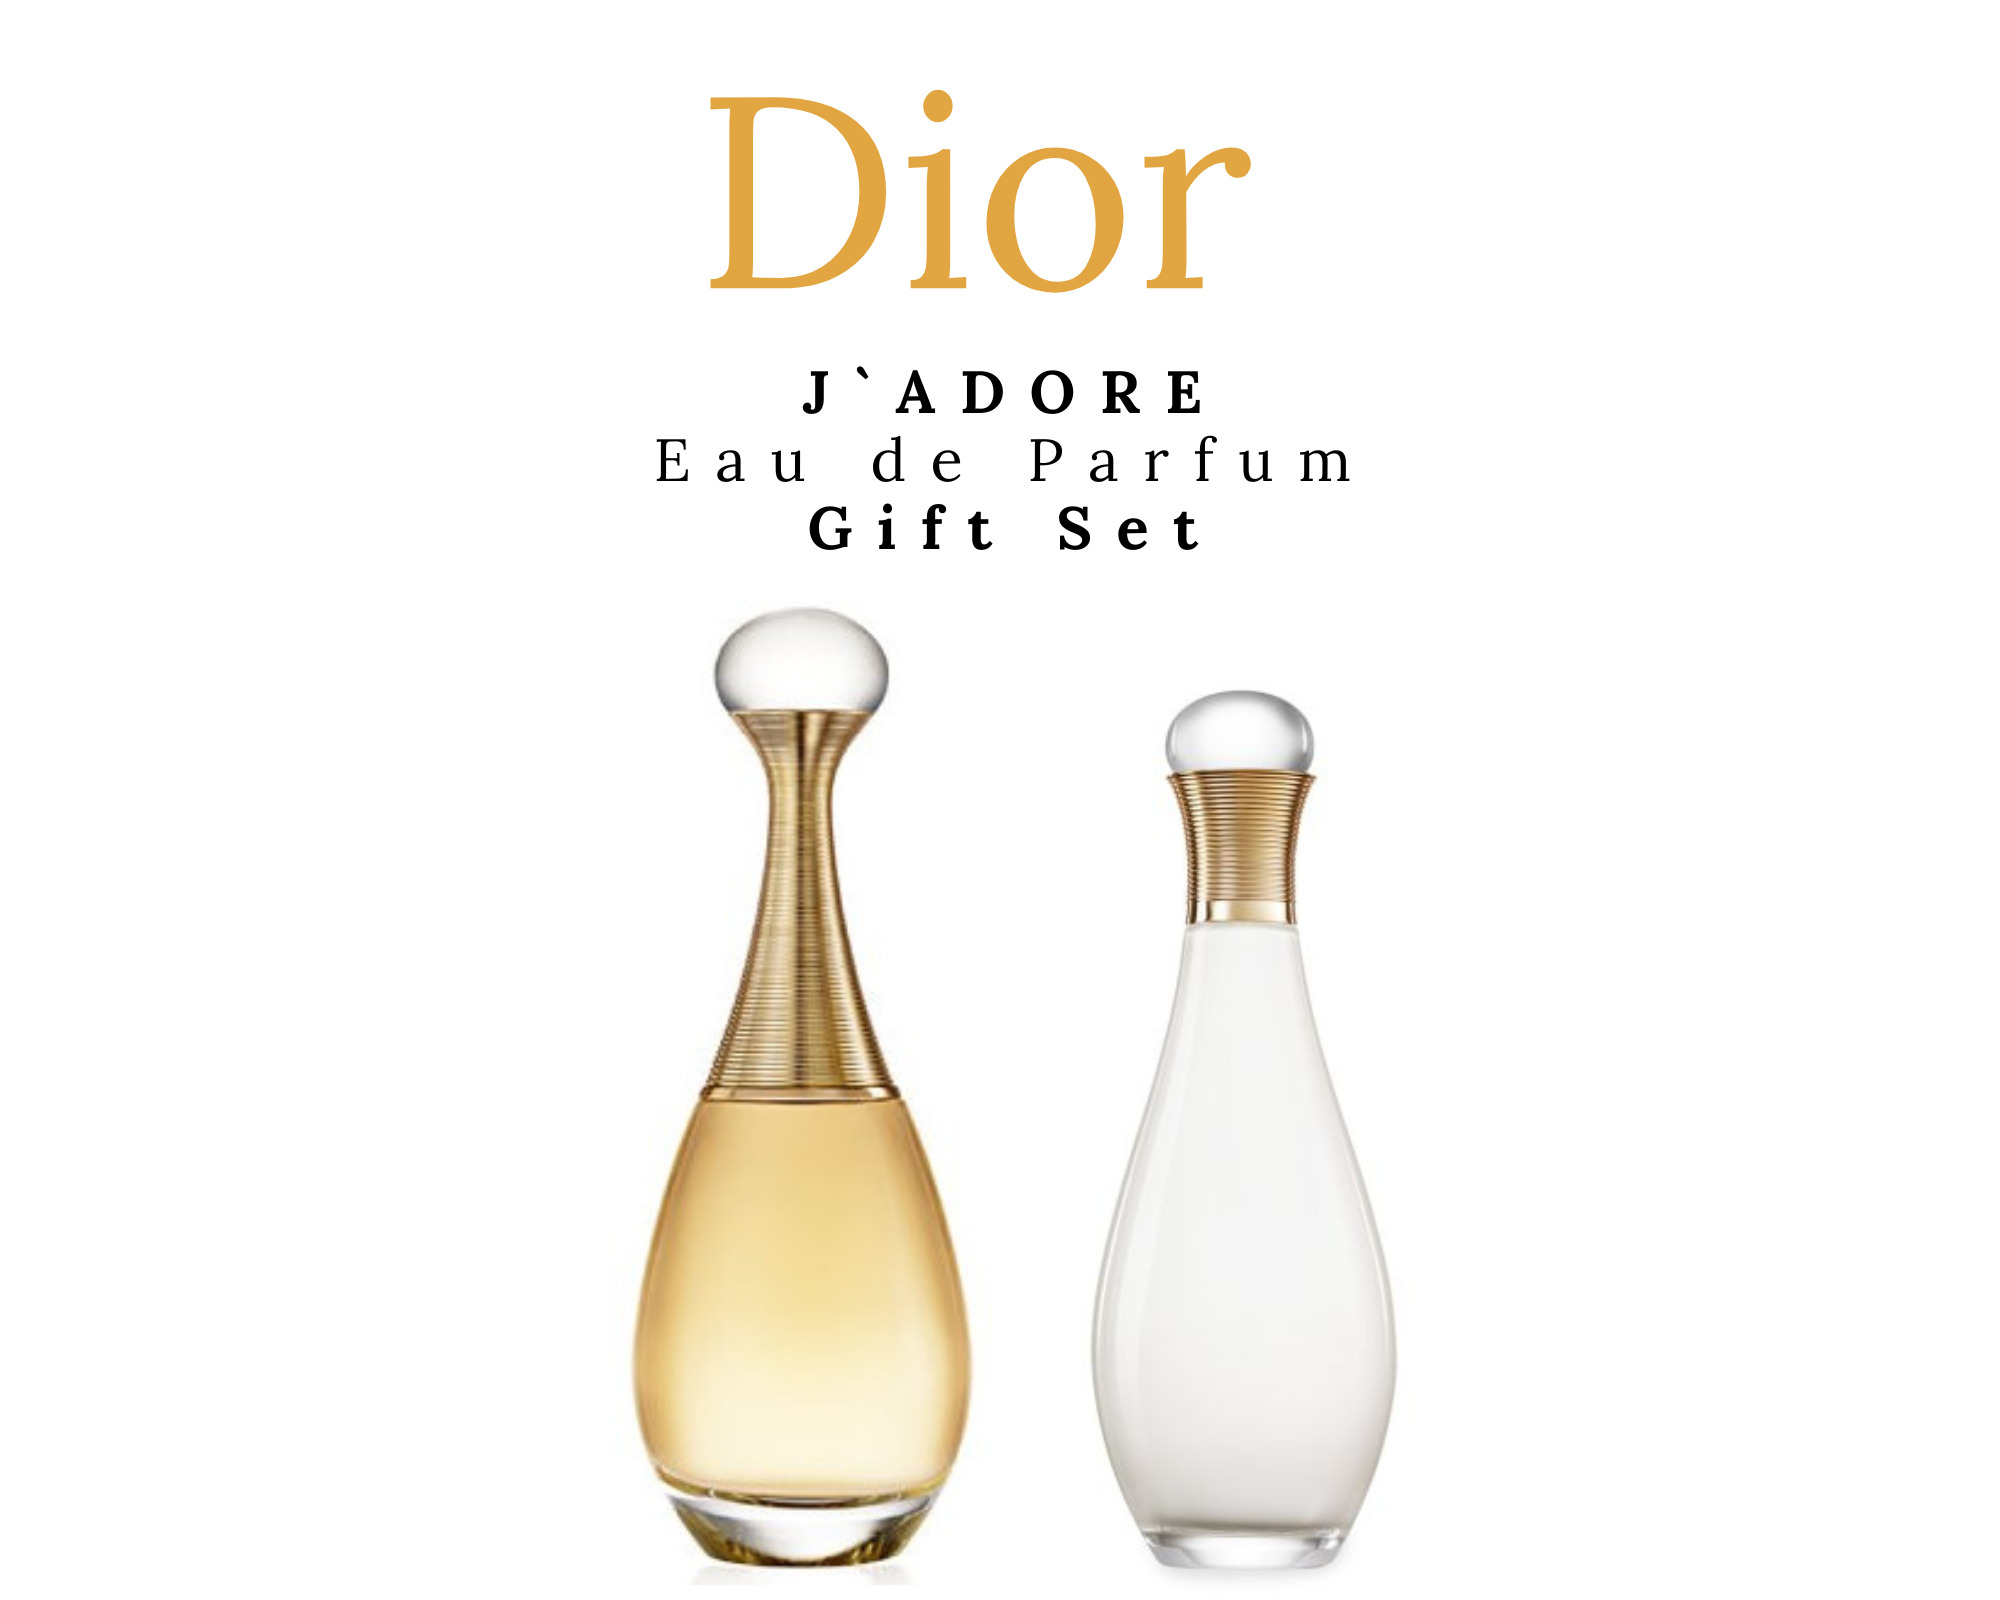 JADORE by Dior Eau de Parfum GIFT SET